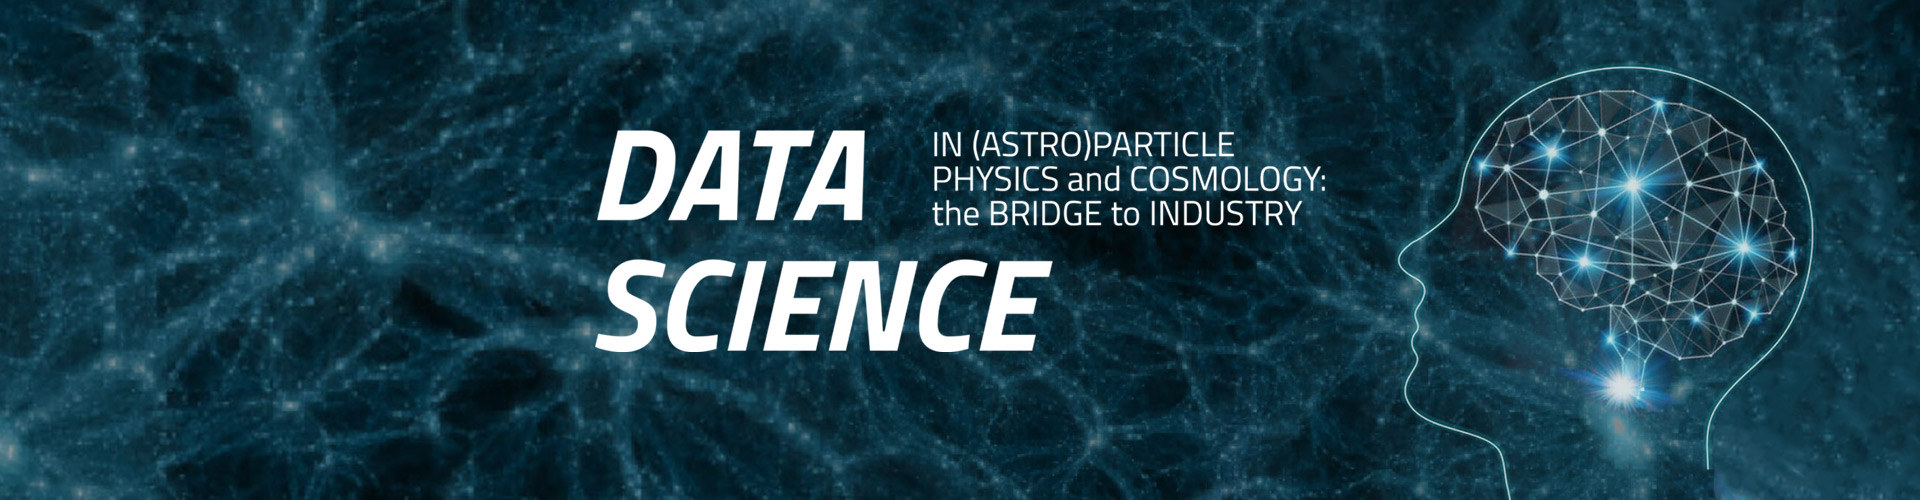 Data Science - Symposium